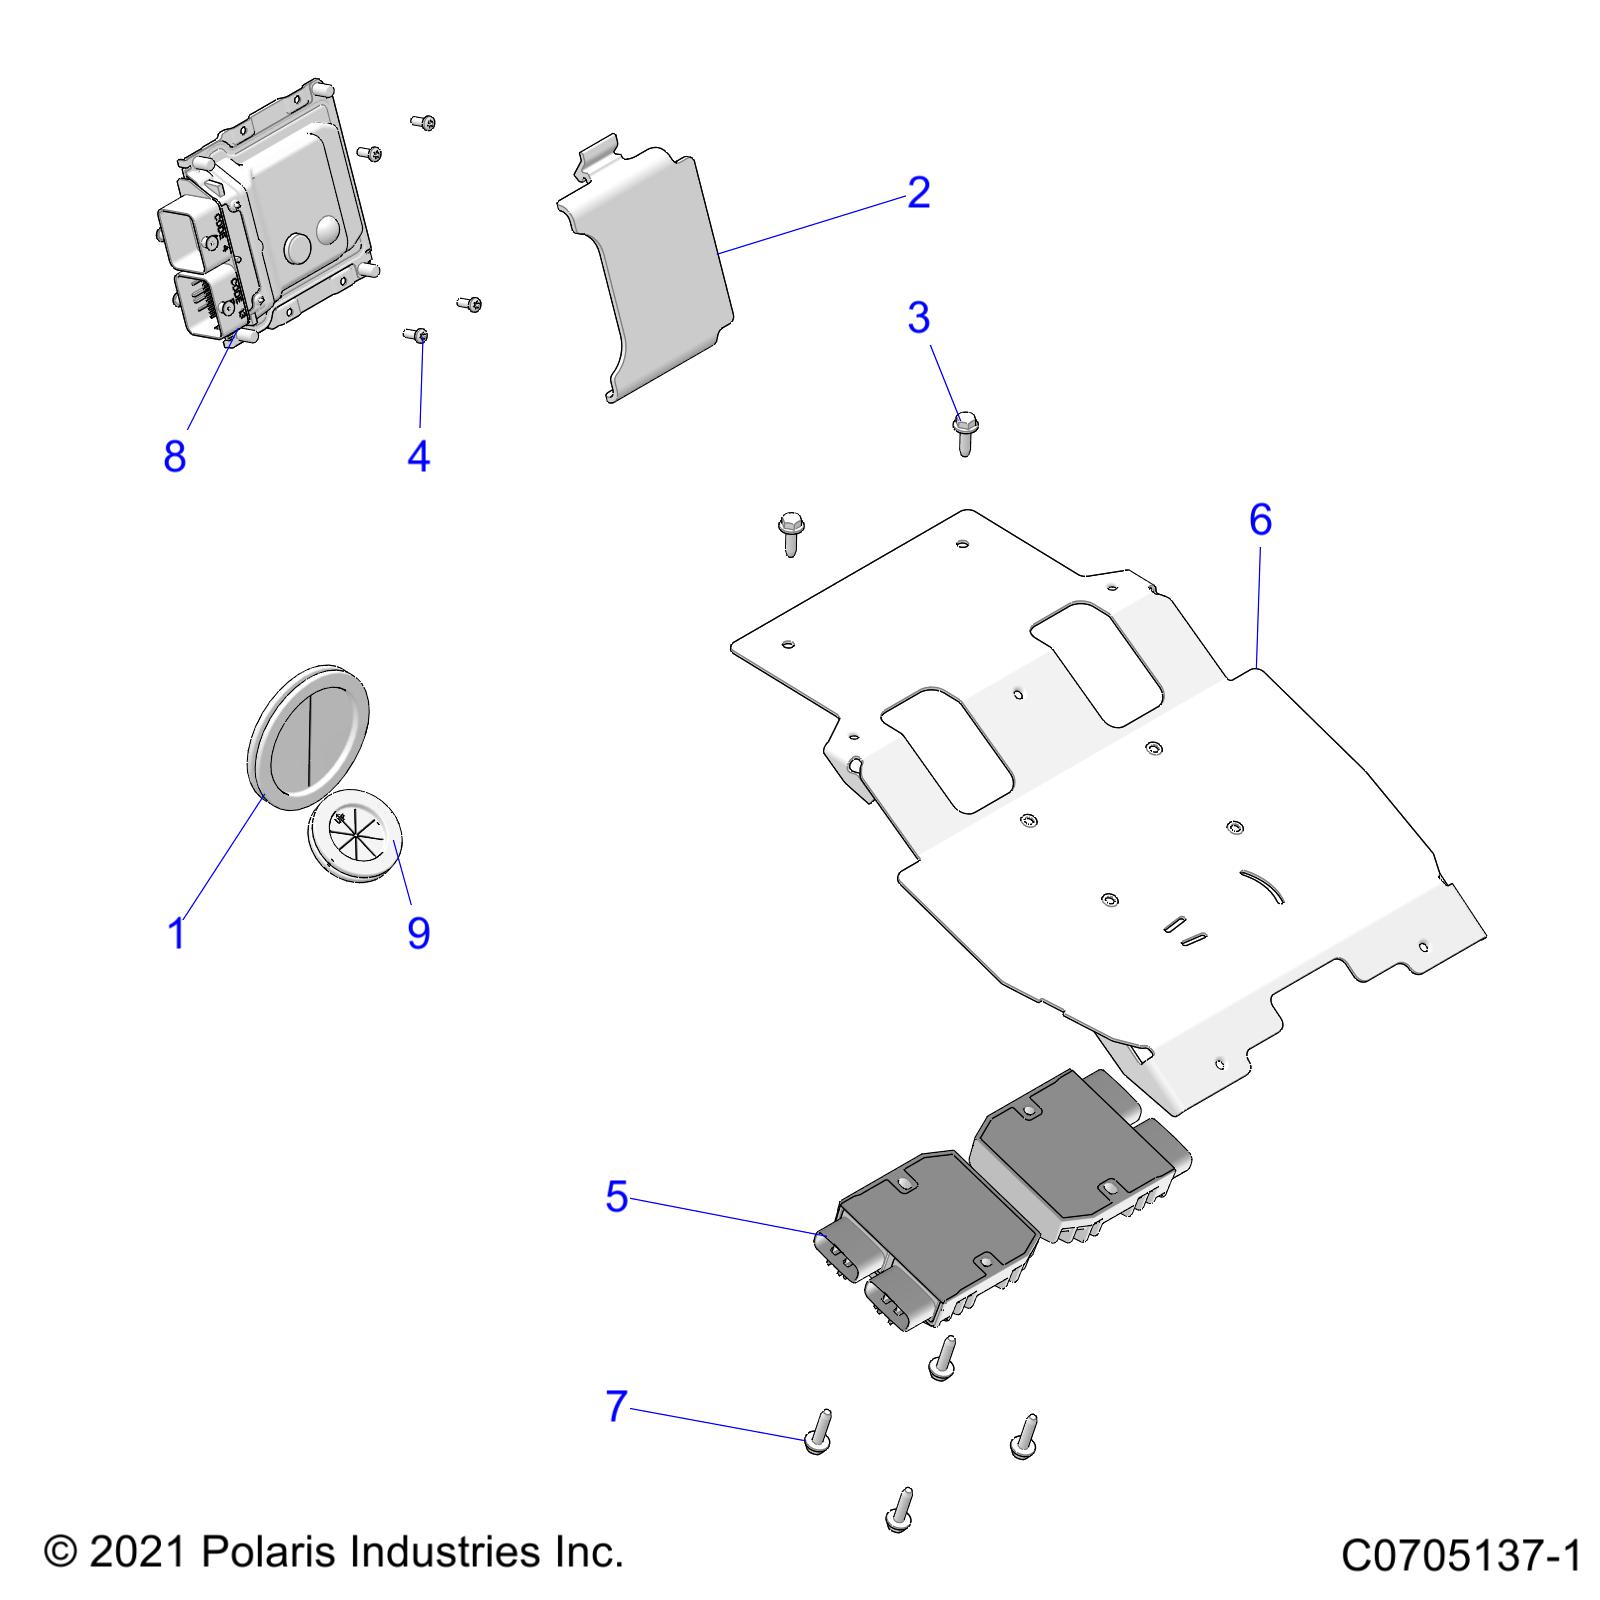 Foto diagrama Polaris que contem a peça 5267669-329